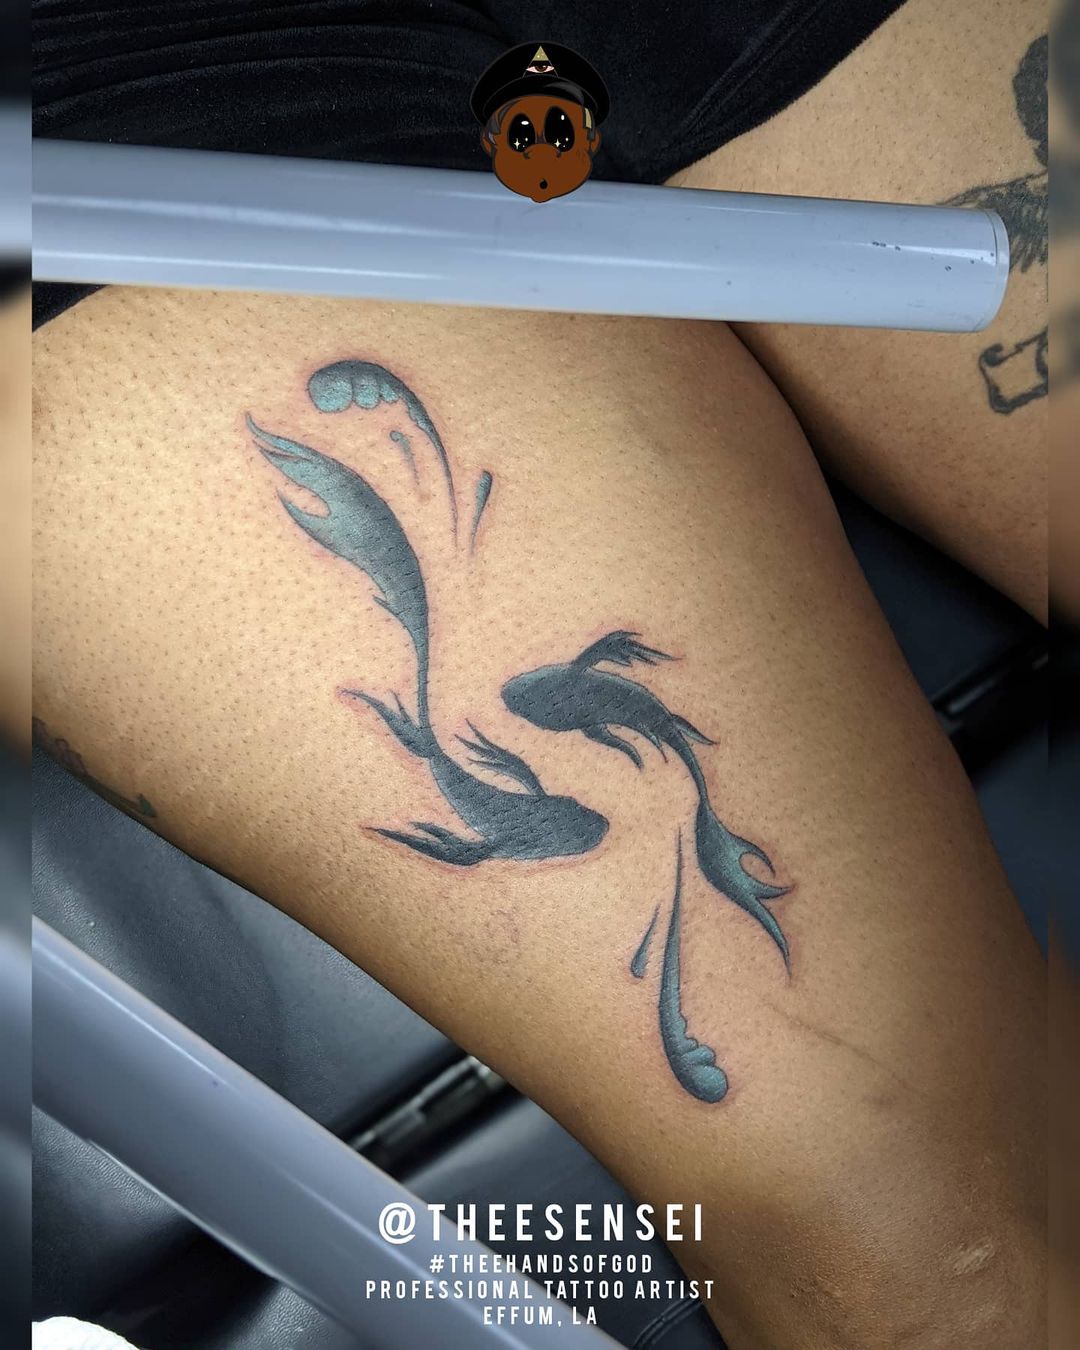 60+ Stunning Zodiac Tattoo Ideas and Designs - 100 Tattoos